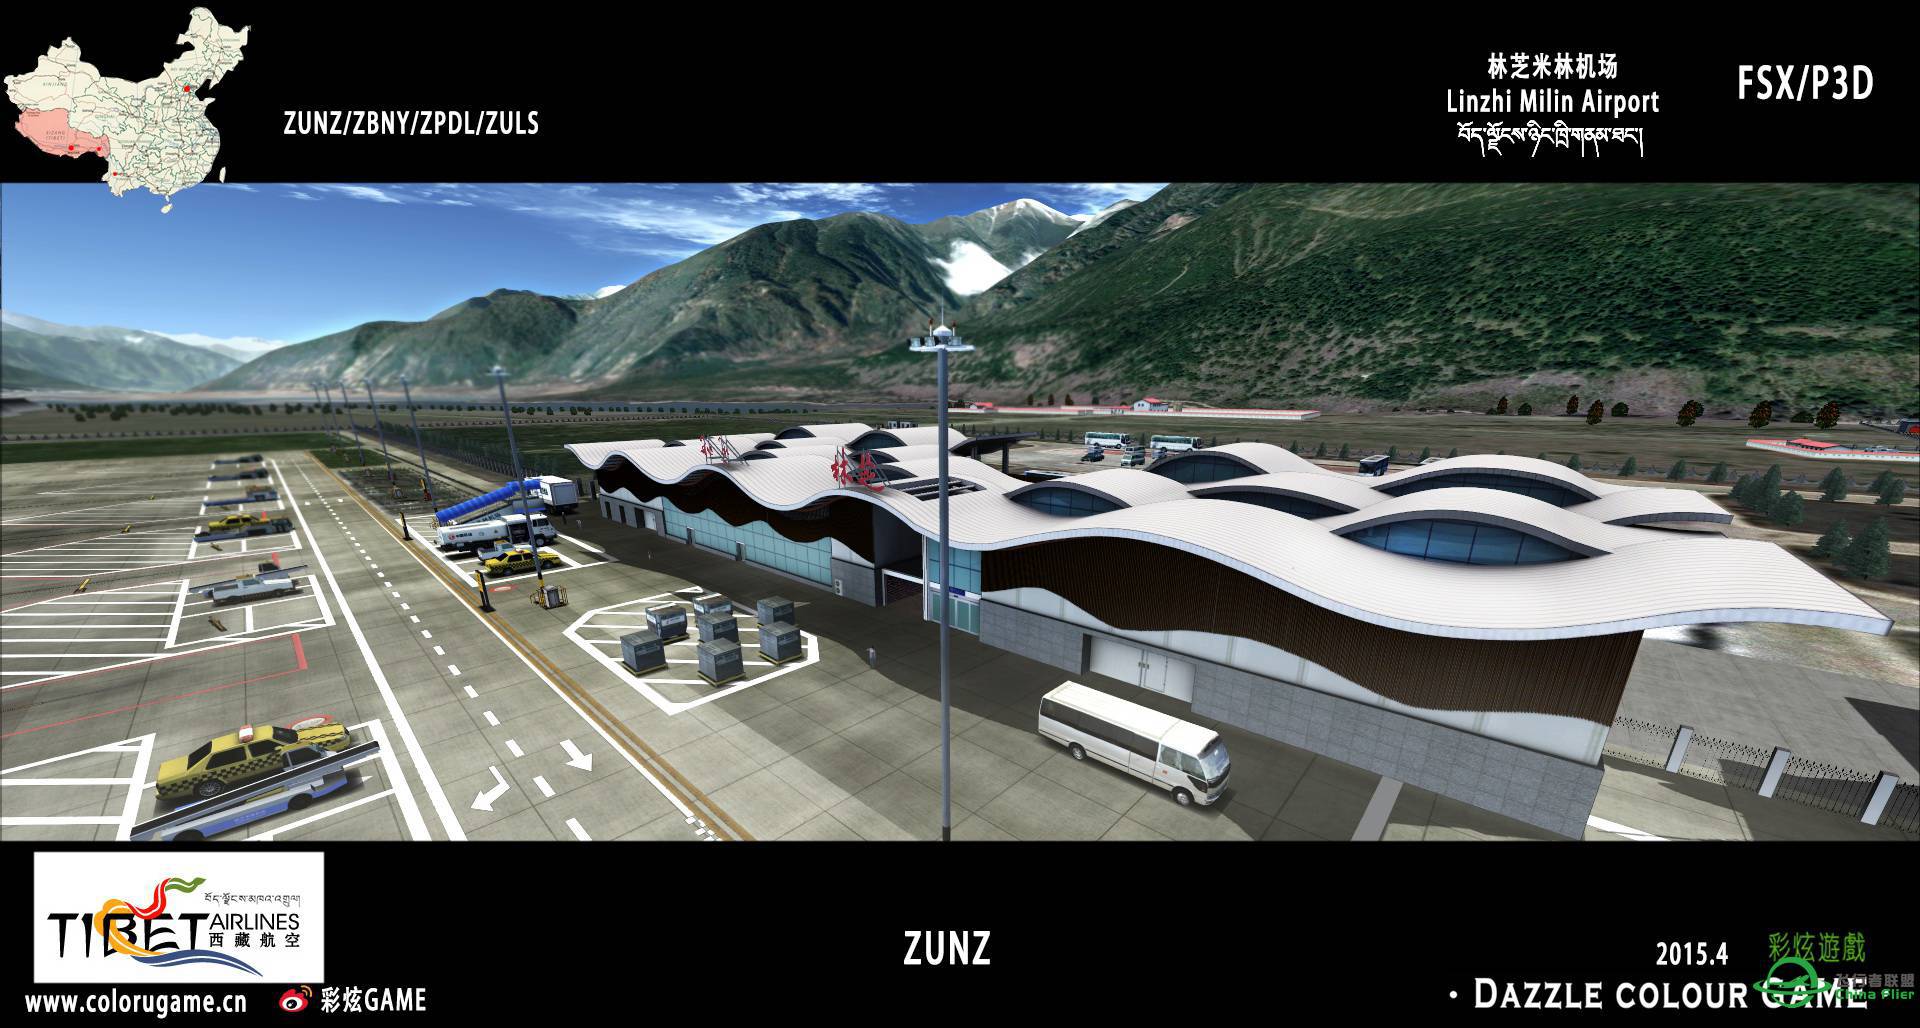 彩炫地景：林芝米林机场（ZUNZ）正式发布！-3372 